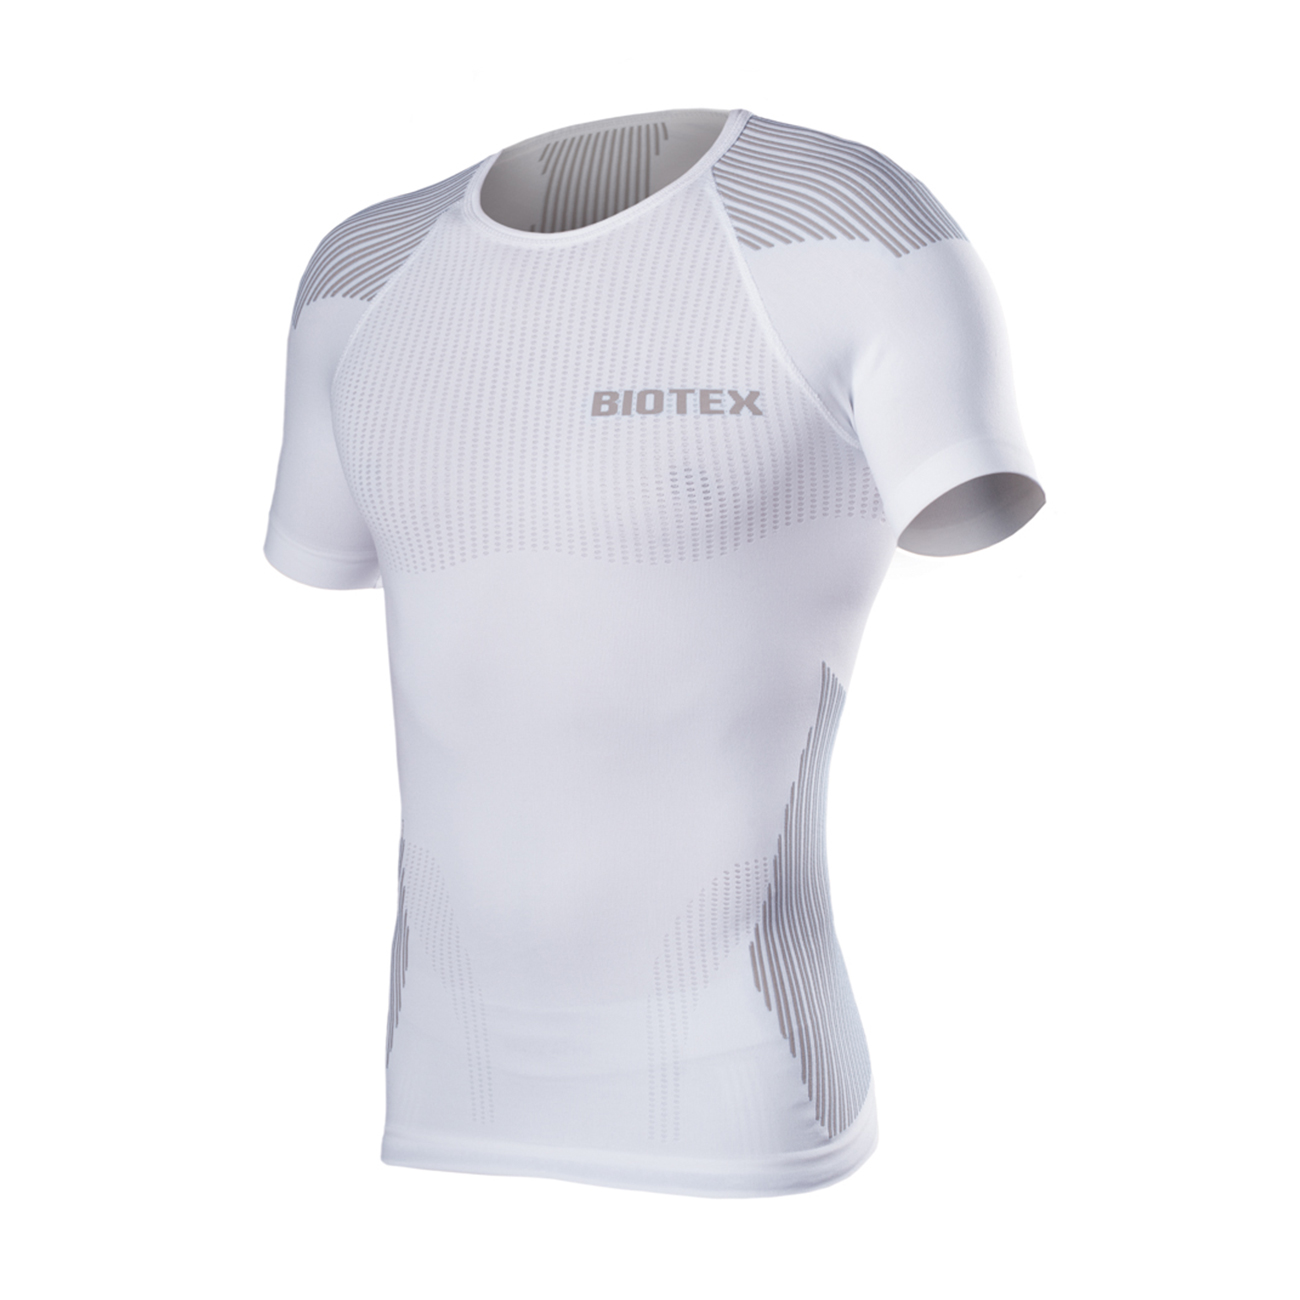 
                BIOTEX Cyklistické triko s krátkým rukávem - BIOFLEX RAGLAN - bílá/šedá XS-S
            